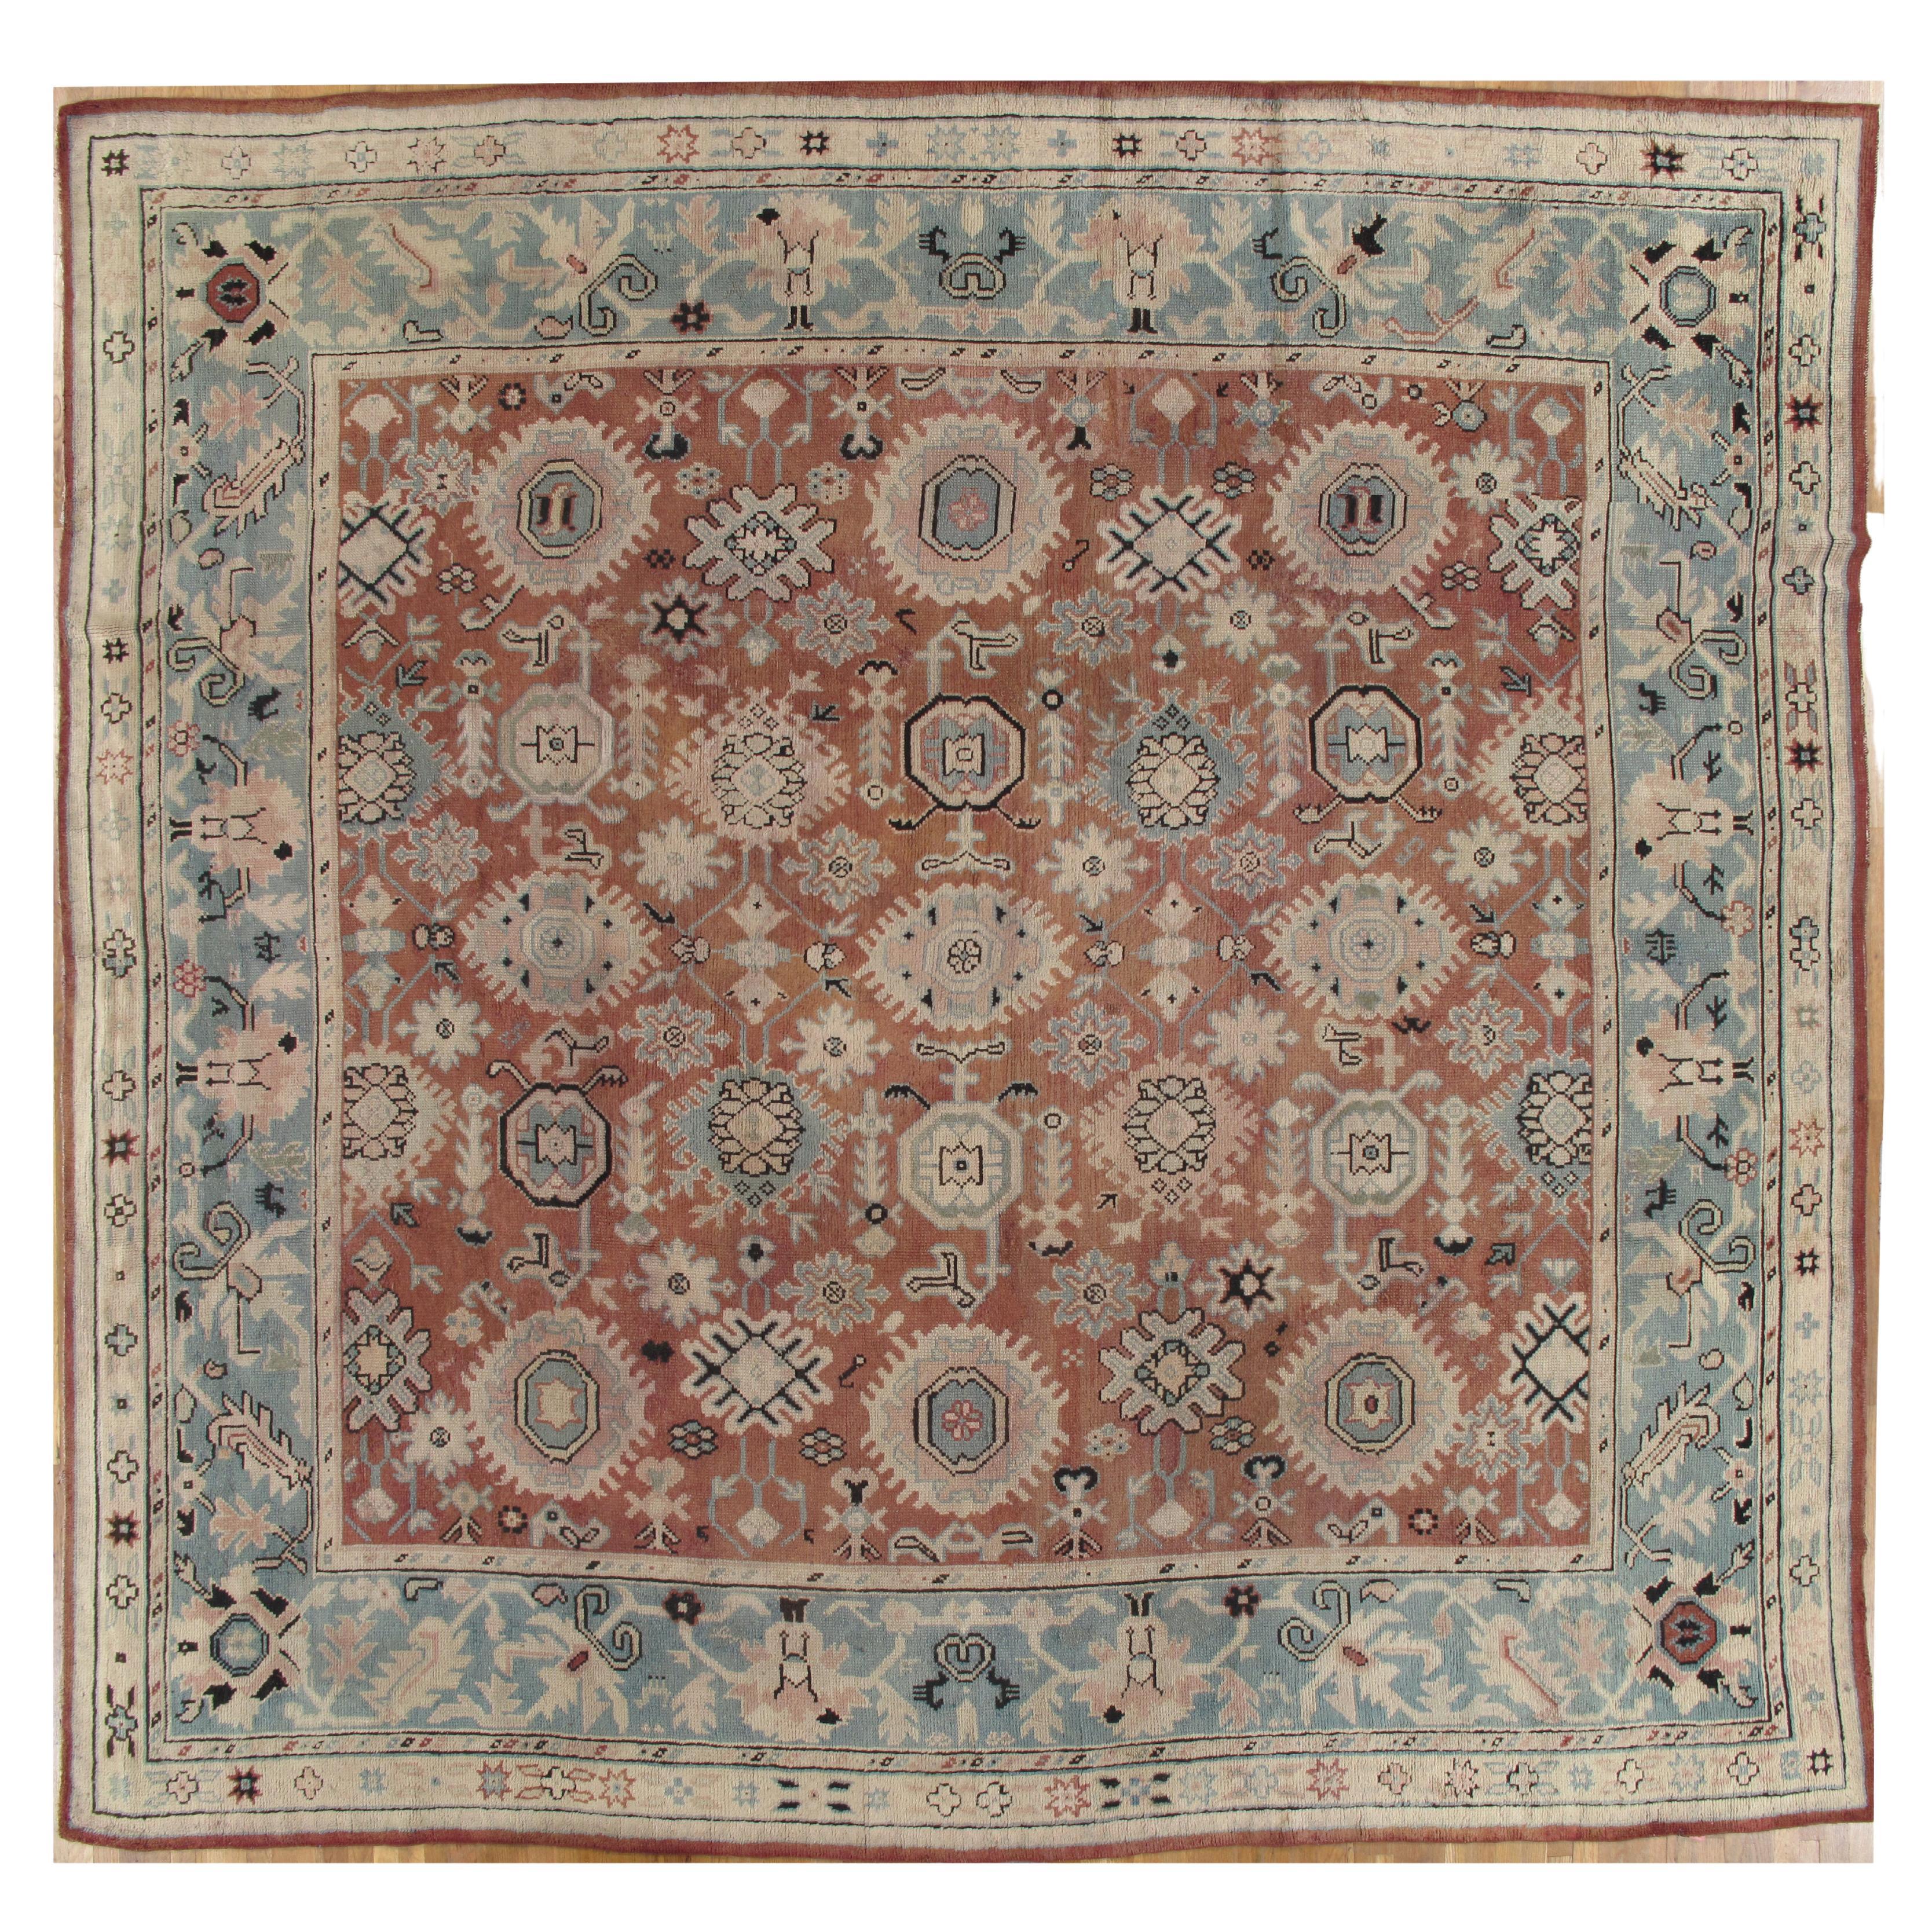 Antique Oushak Carpet, Red Carpet, Handmade Carpet, Turkish Carpet, Brown, Green